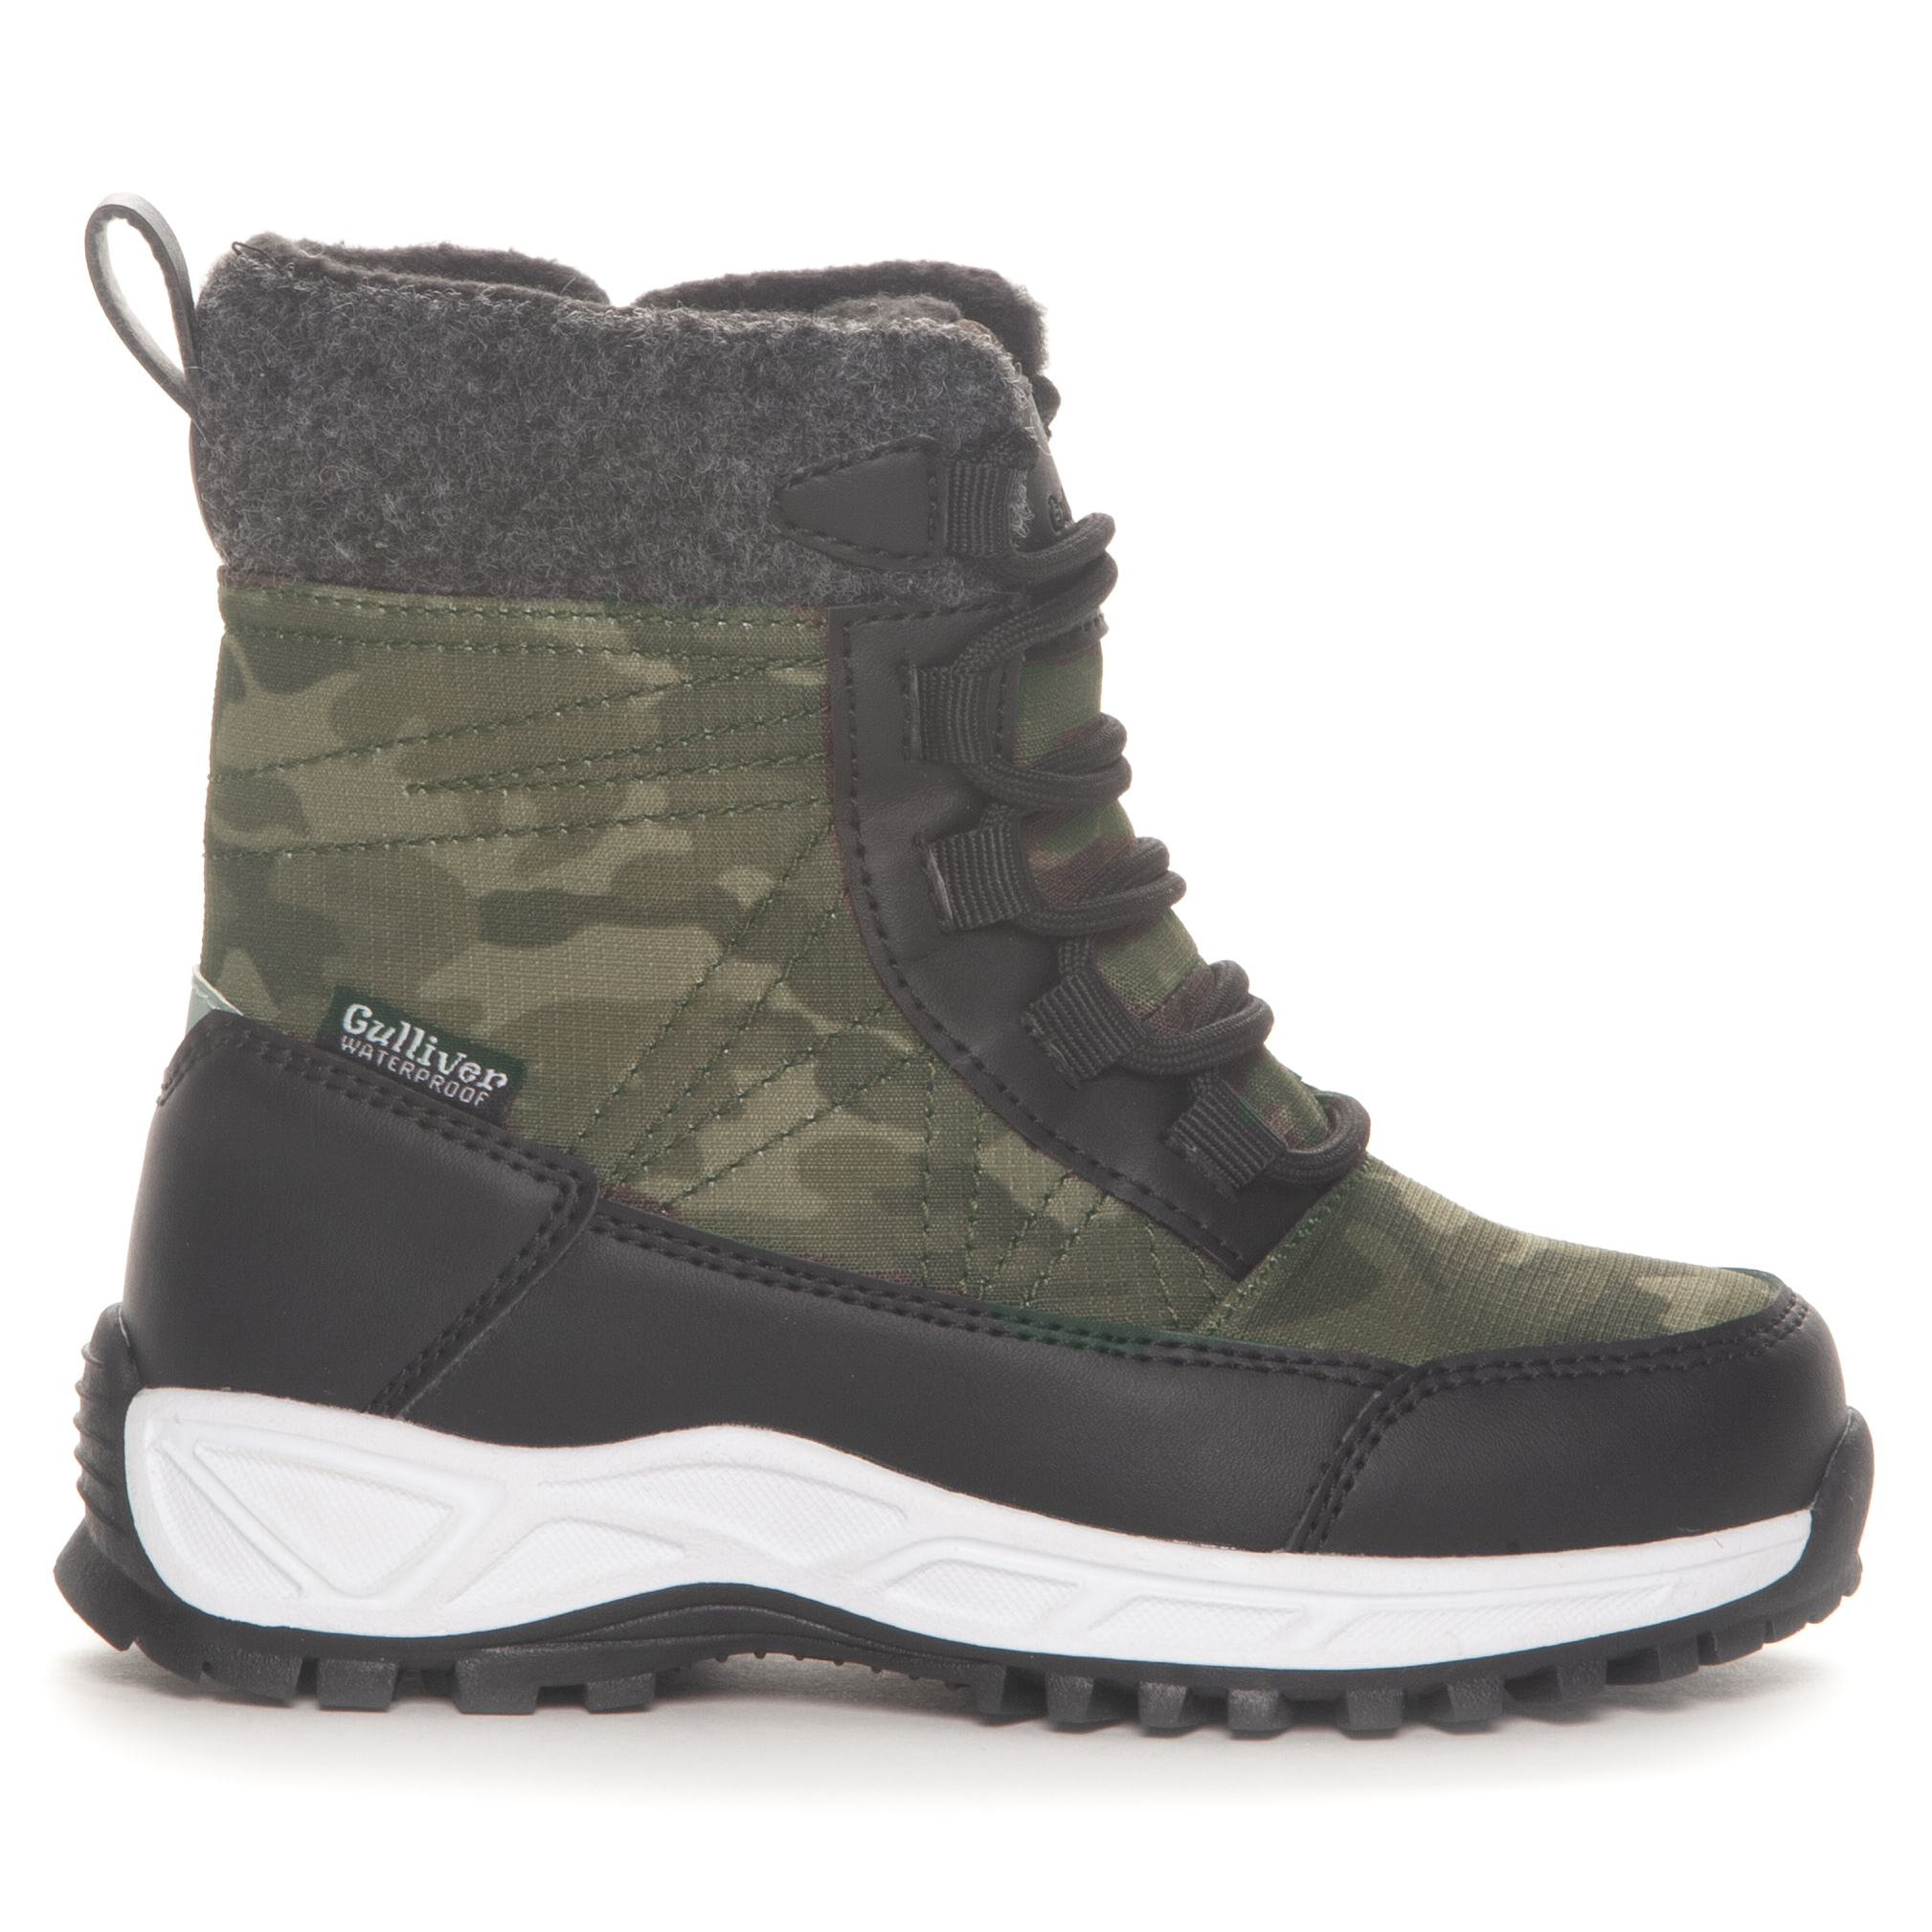 Kids’ Waterproof Winter Boots 3 Black/Green